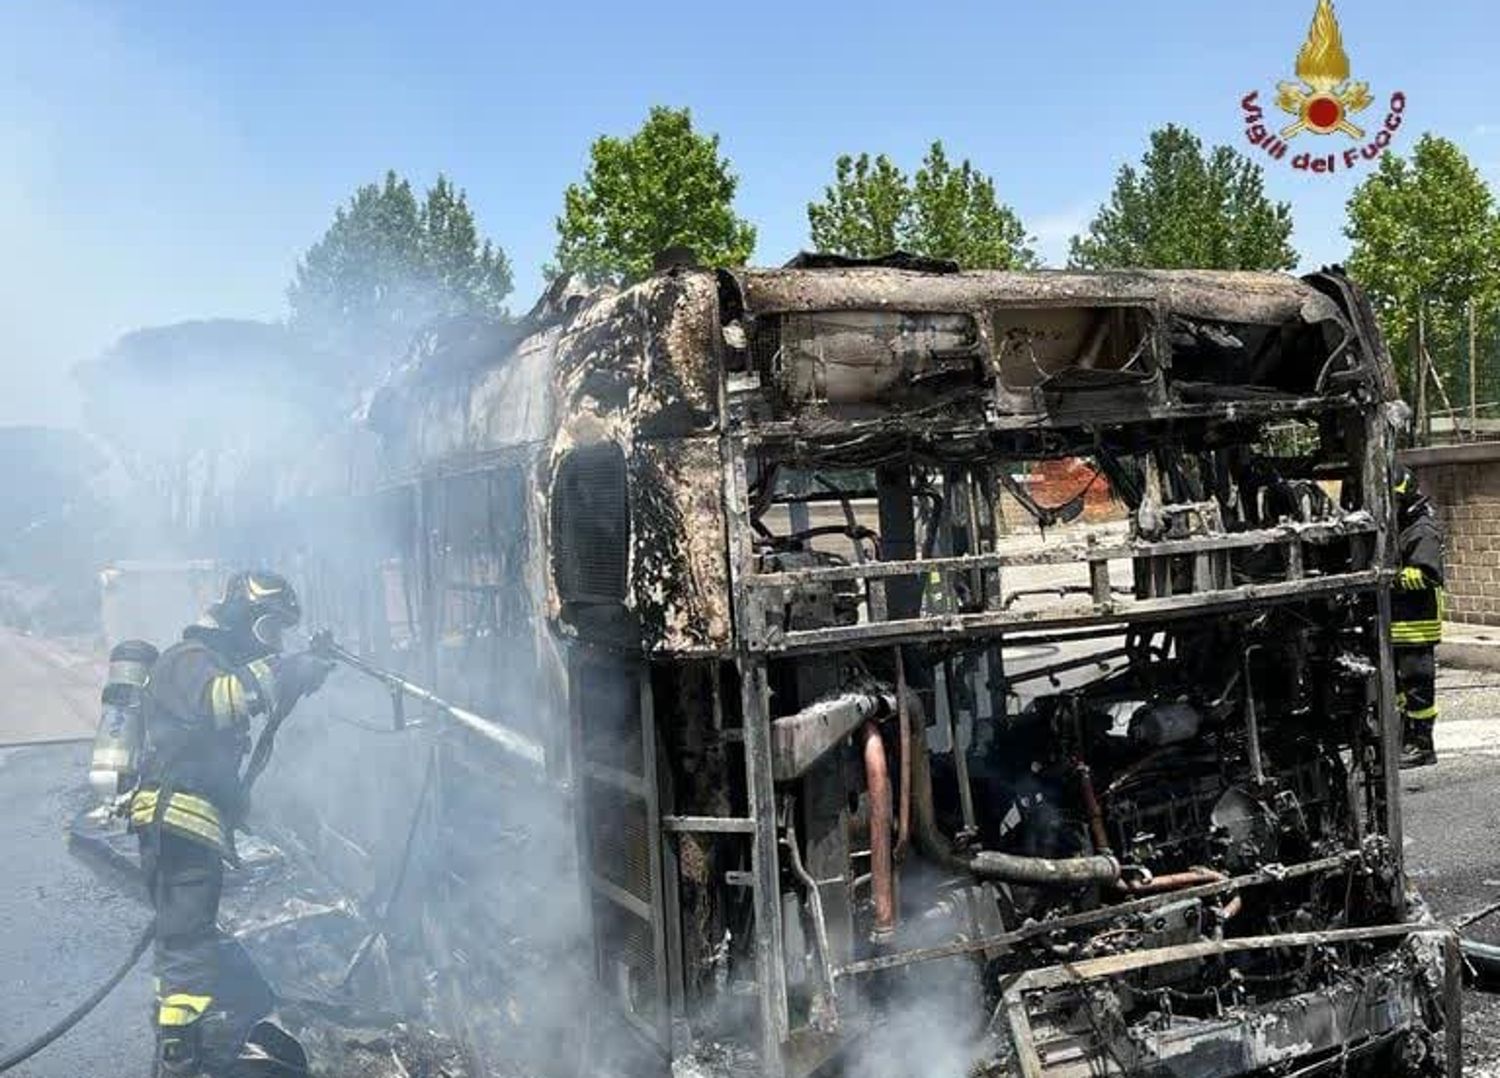 Bus Atac a fuoco laurentina